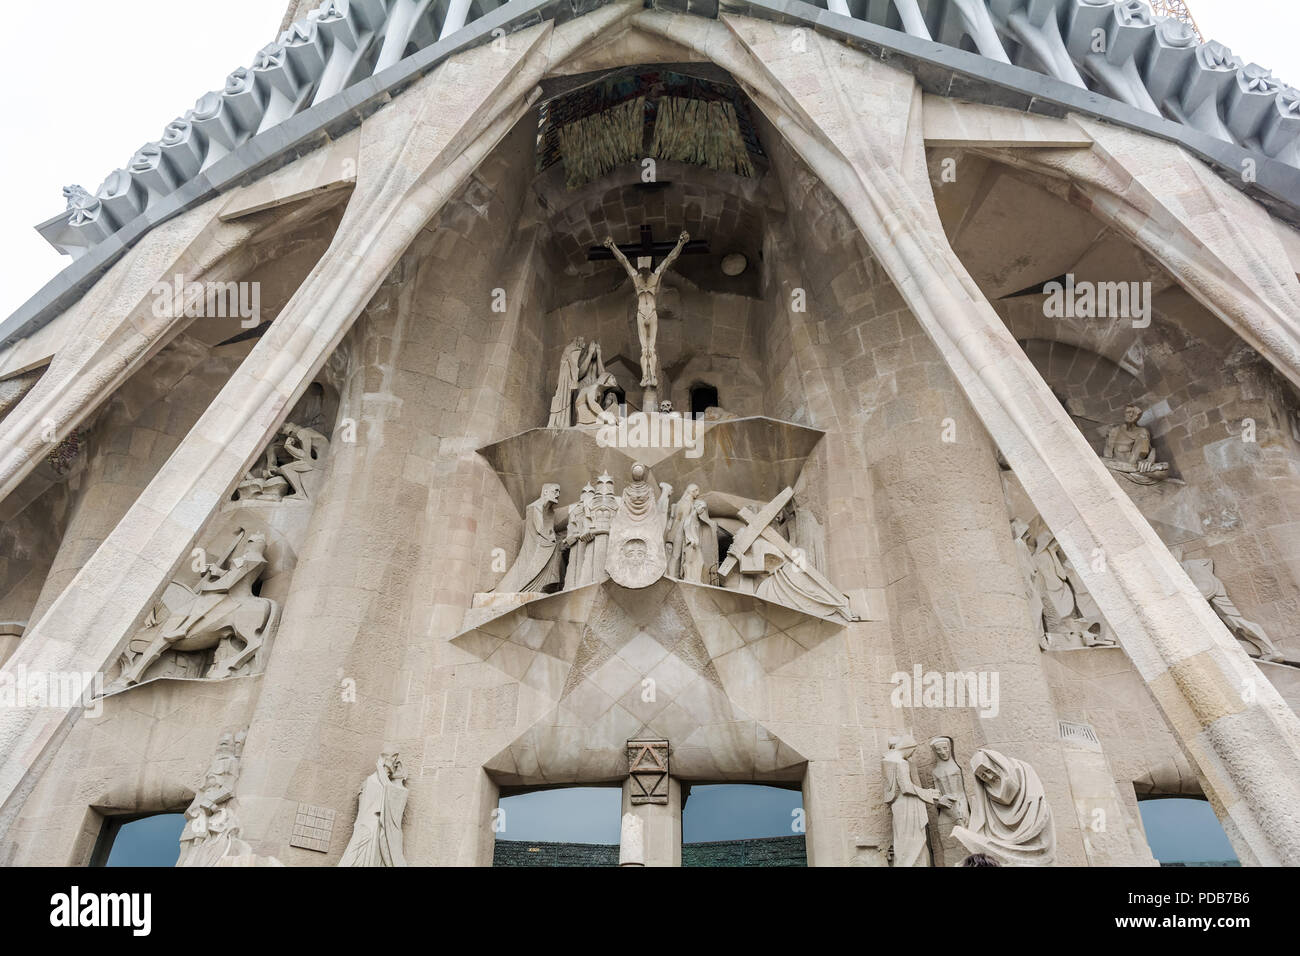 Austera e semplice facciata della Passione della Sagrada Familia a Barcellona, Spagna. Dedicato alla Passione di Cristo, la sofferenza di Gesù durante il suo cr Foto Stock